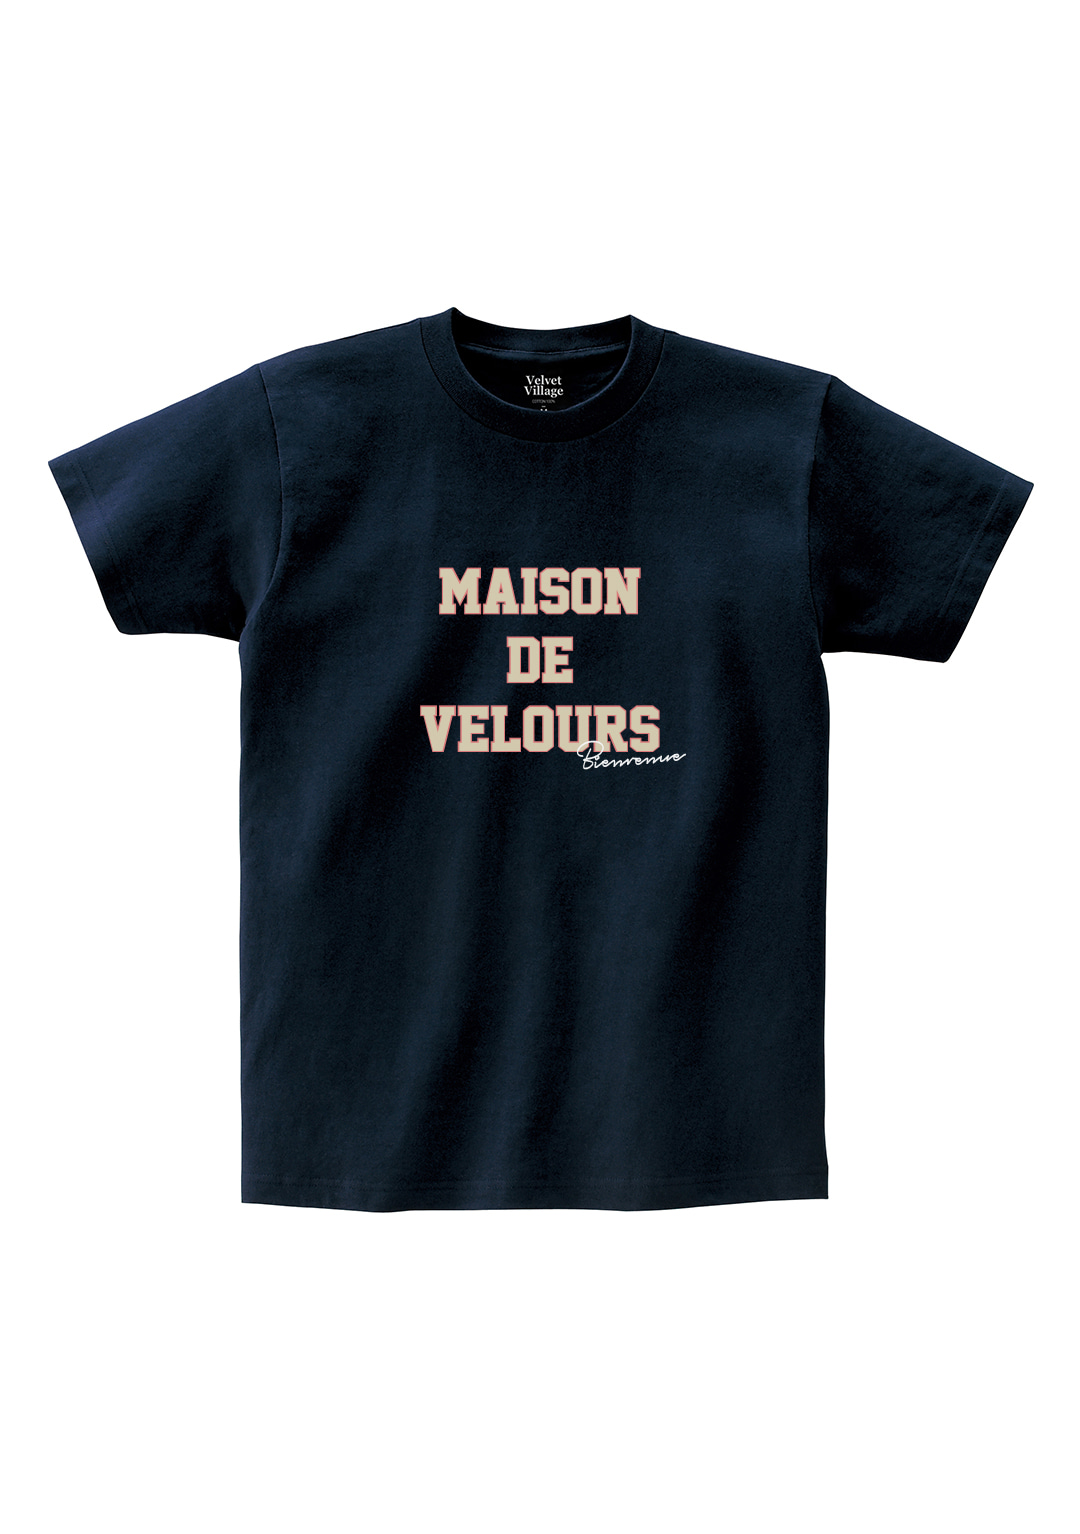 Maison Velours T-shirt (Navy)